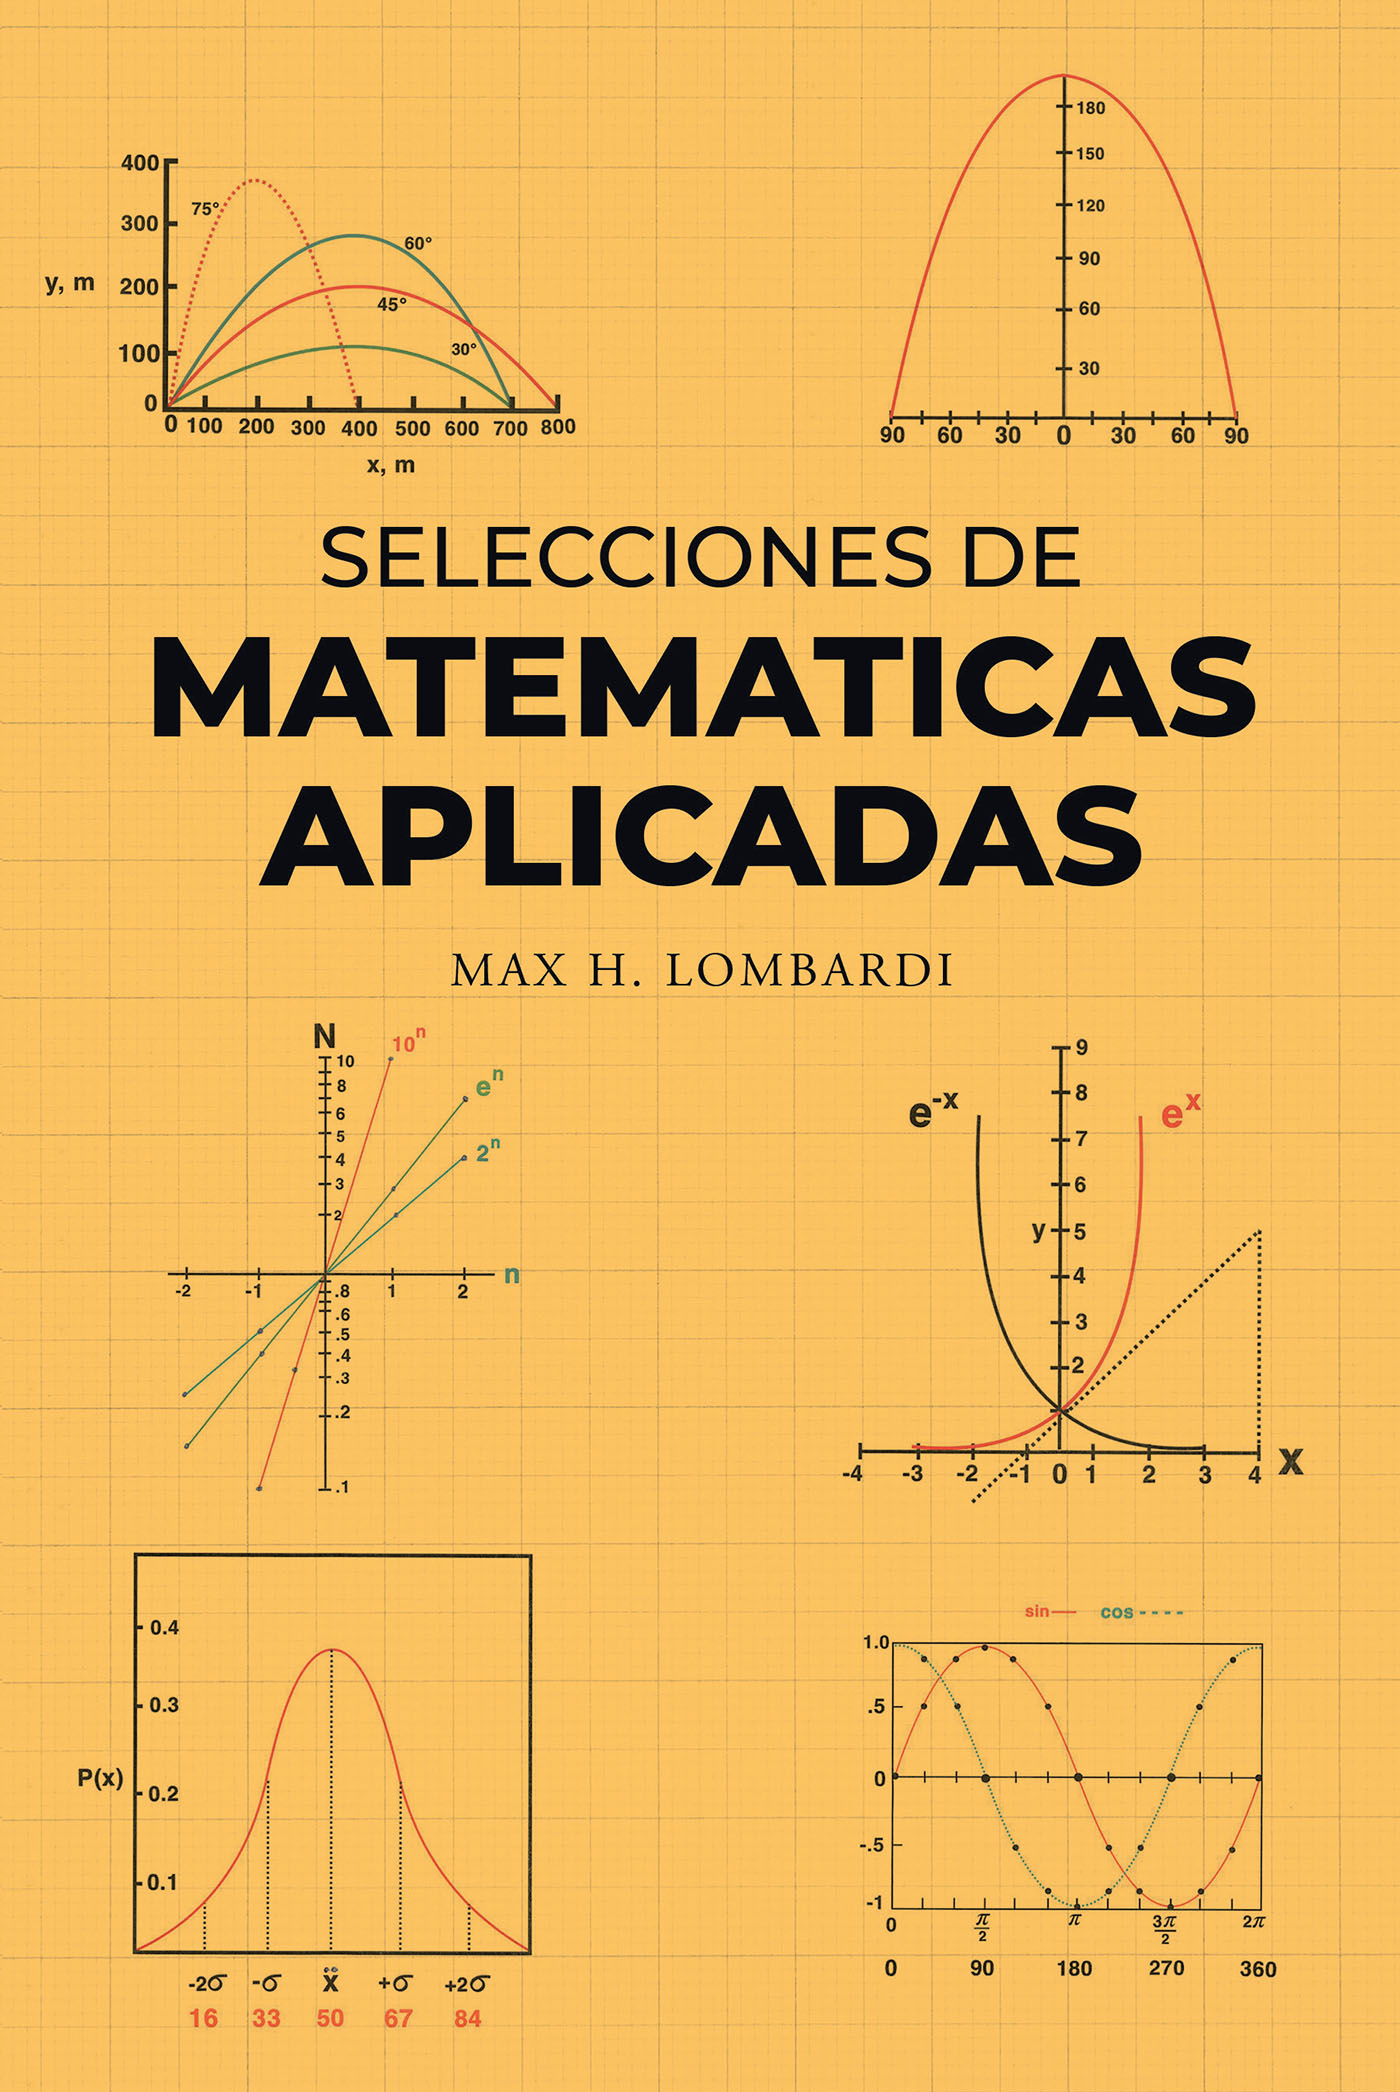 Selecciones de Matematicas Aplicadas Cover Image